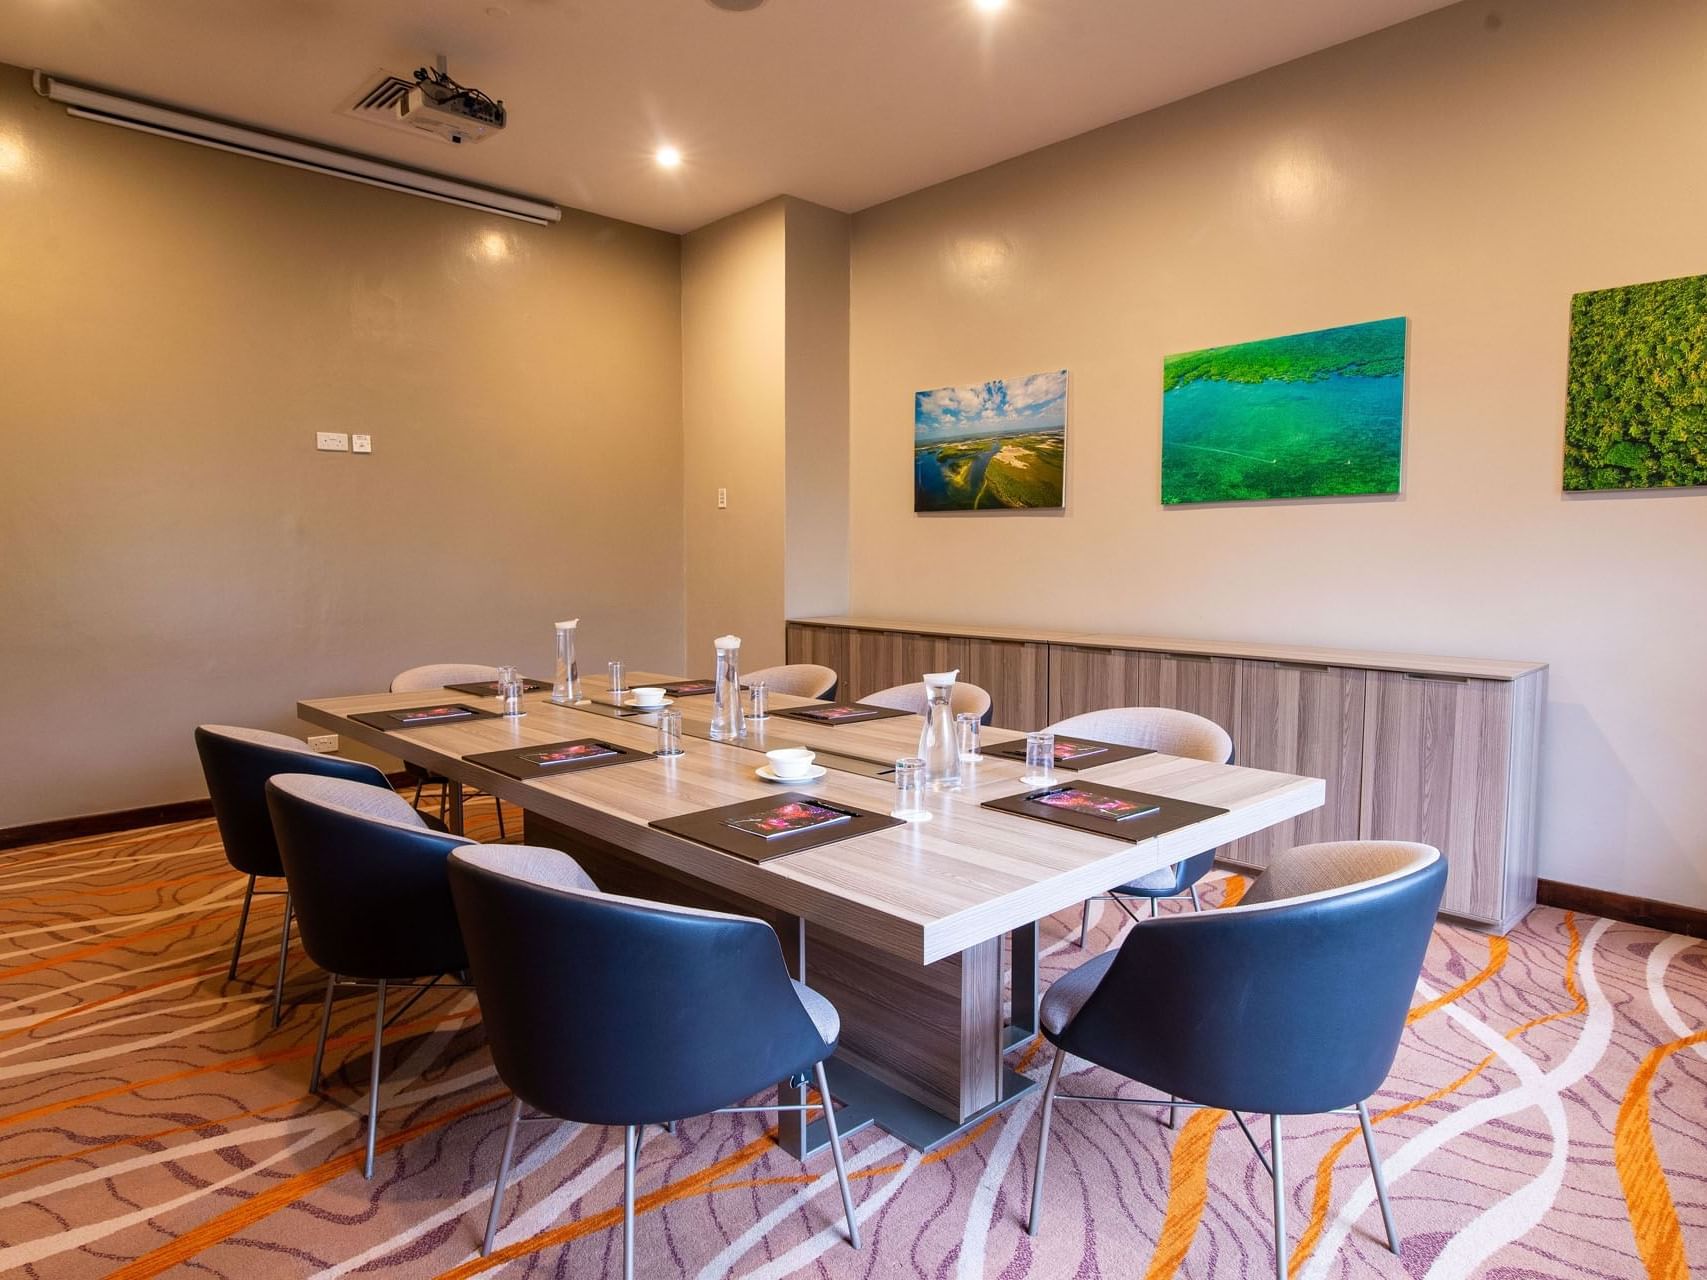 Baraza meeting room at Tamarind Tree Hotel